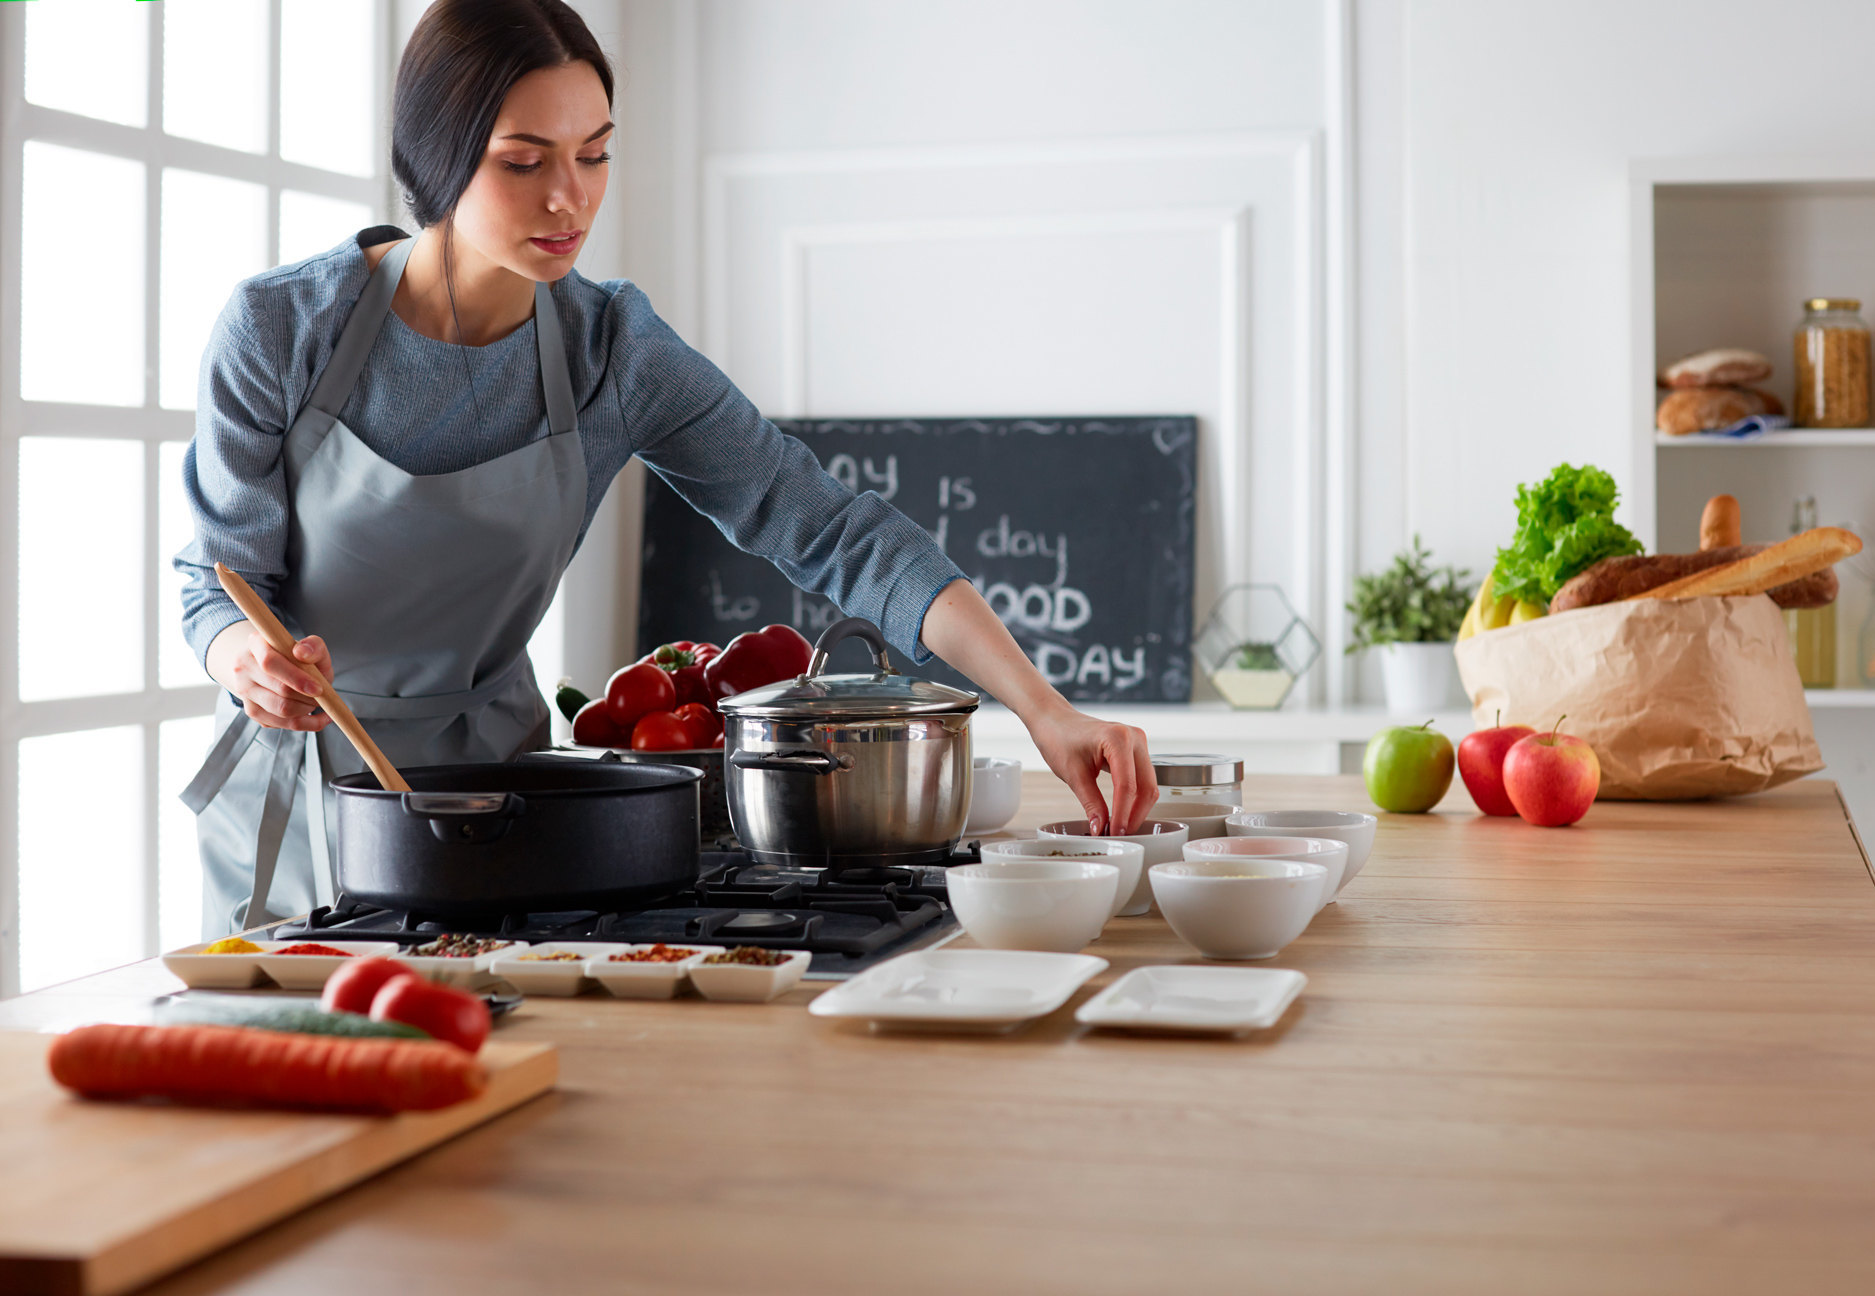 15 thiết bị nhà bếp sẽ giúp bạn nấu ăn như một chuyên gia